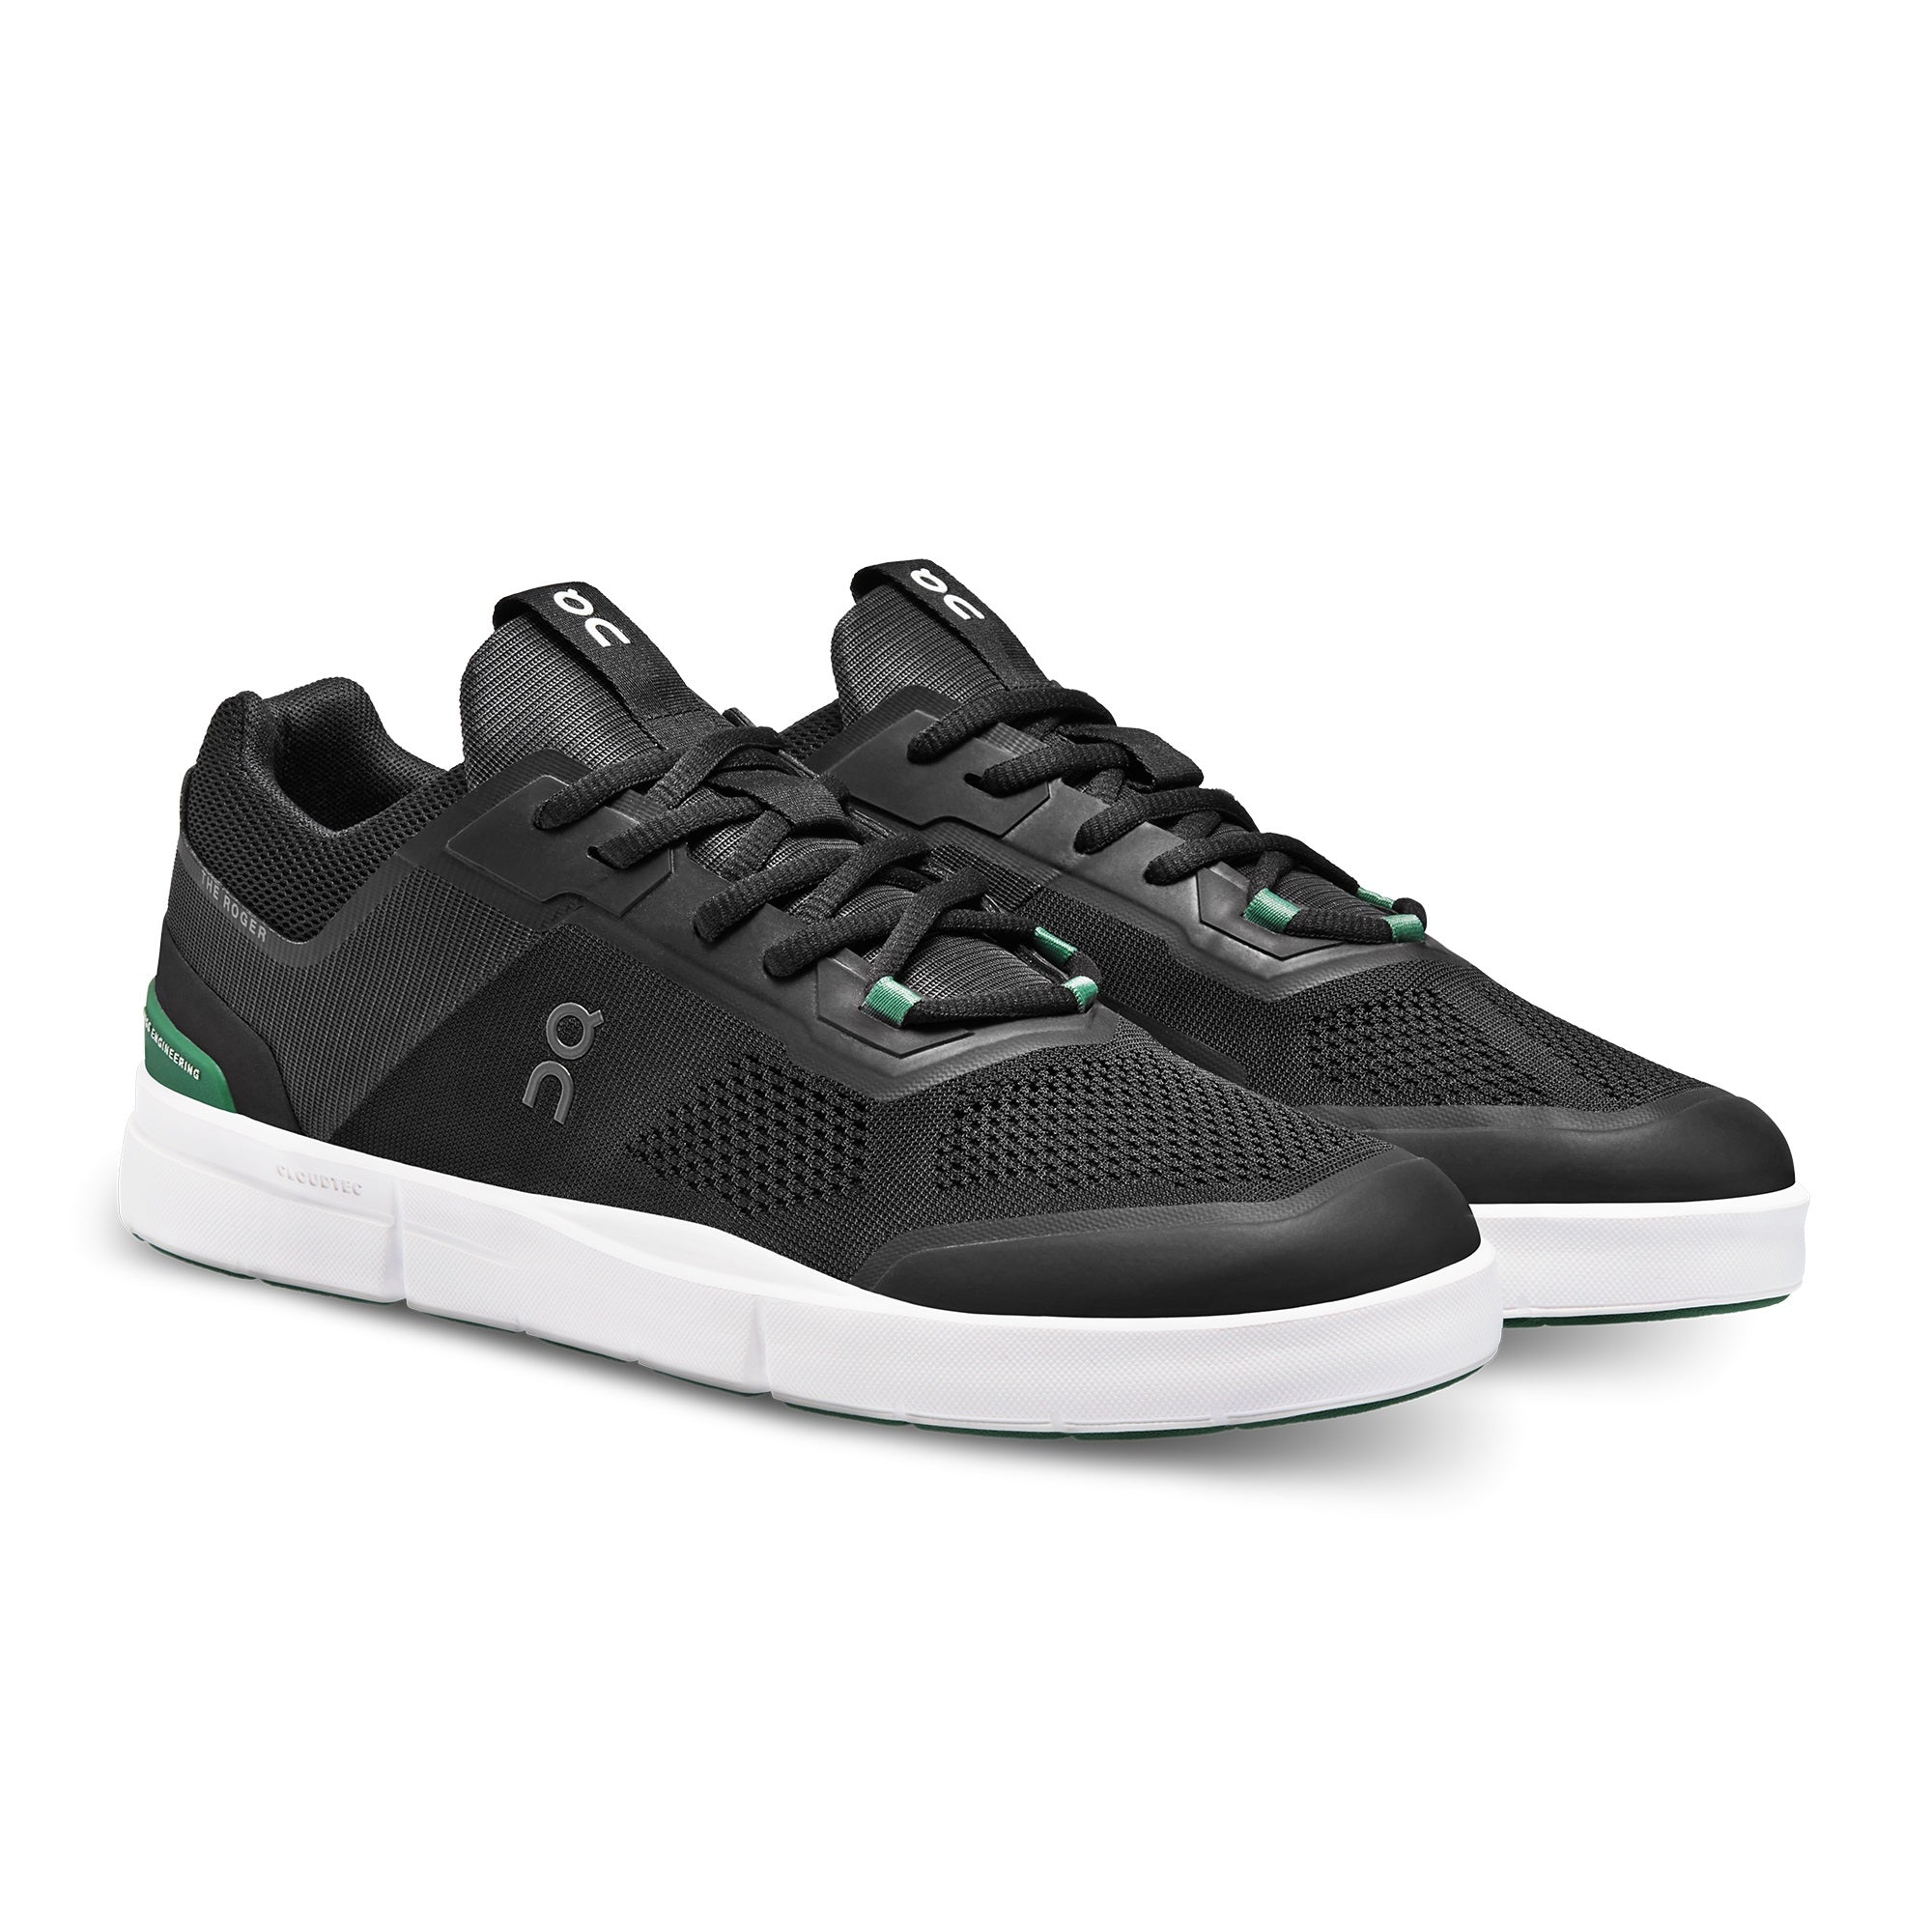 Roger Spin On sneaker men black green pair